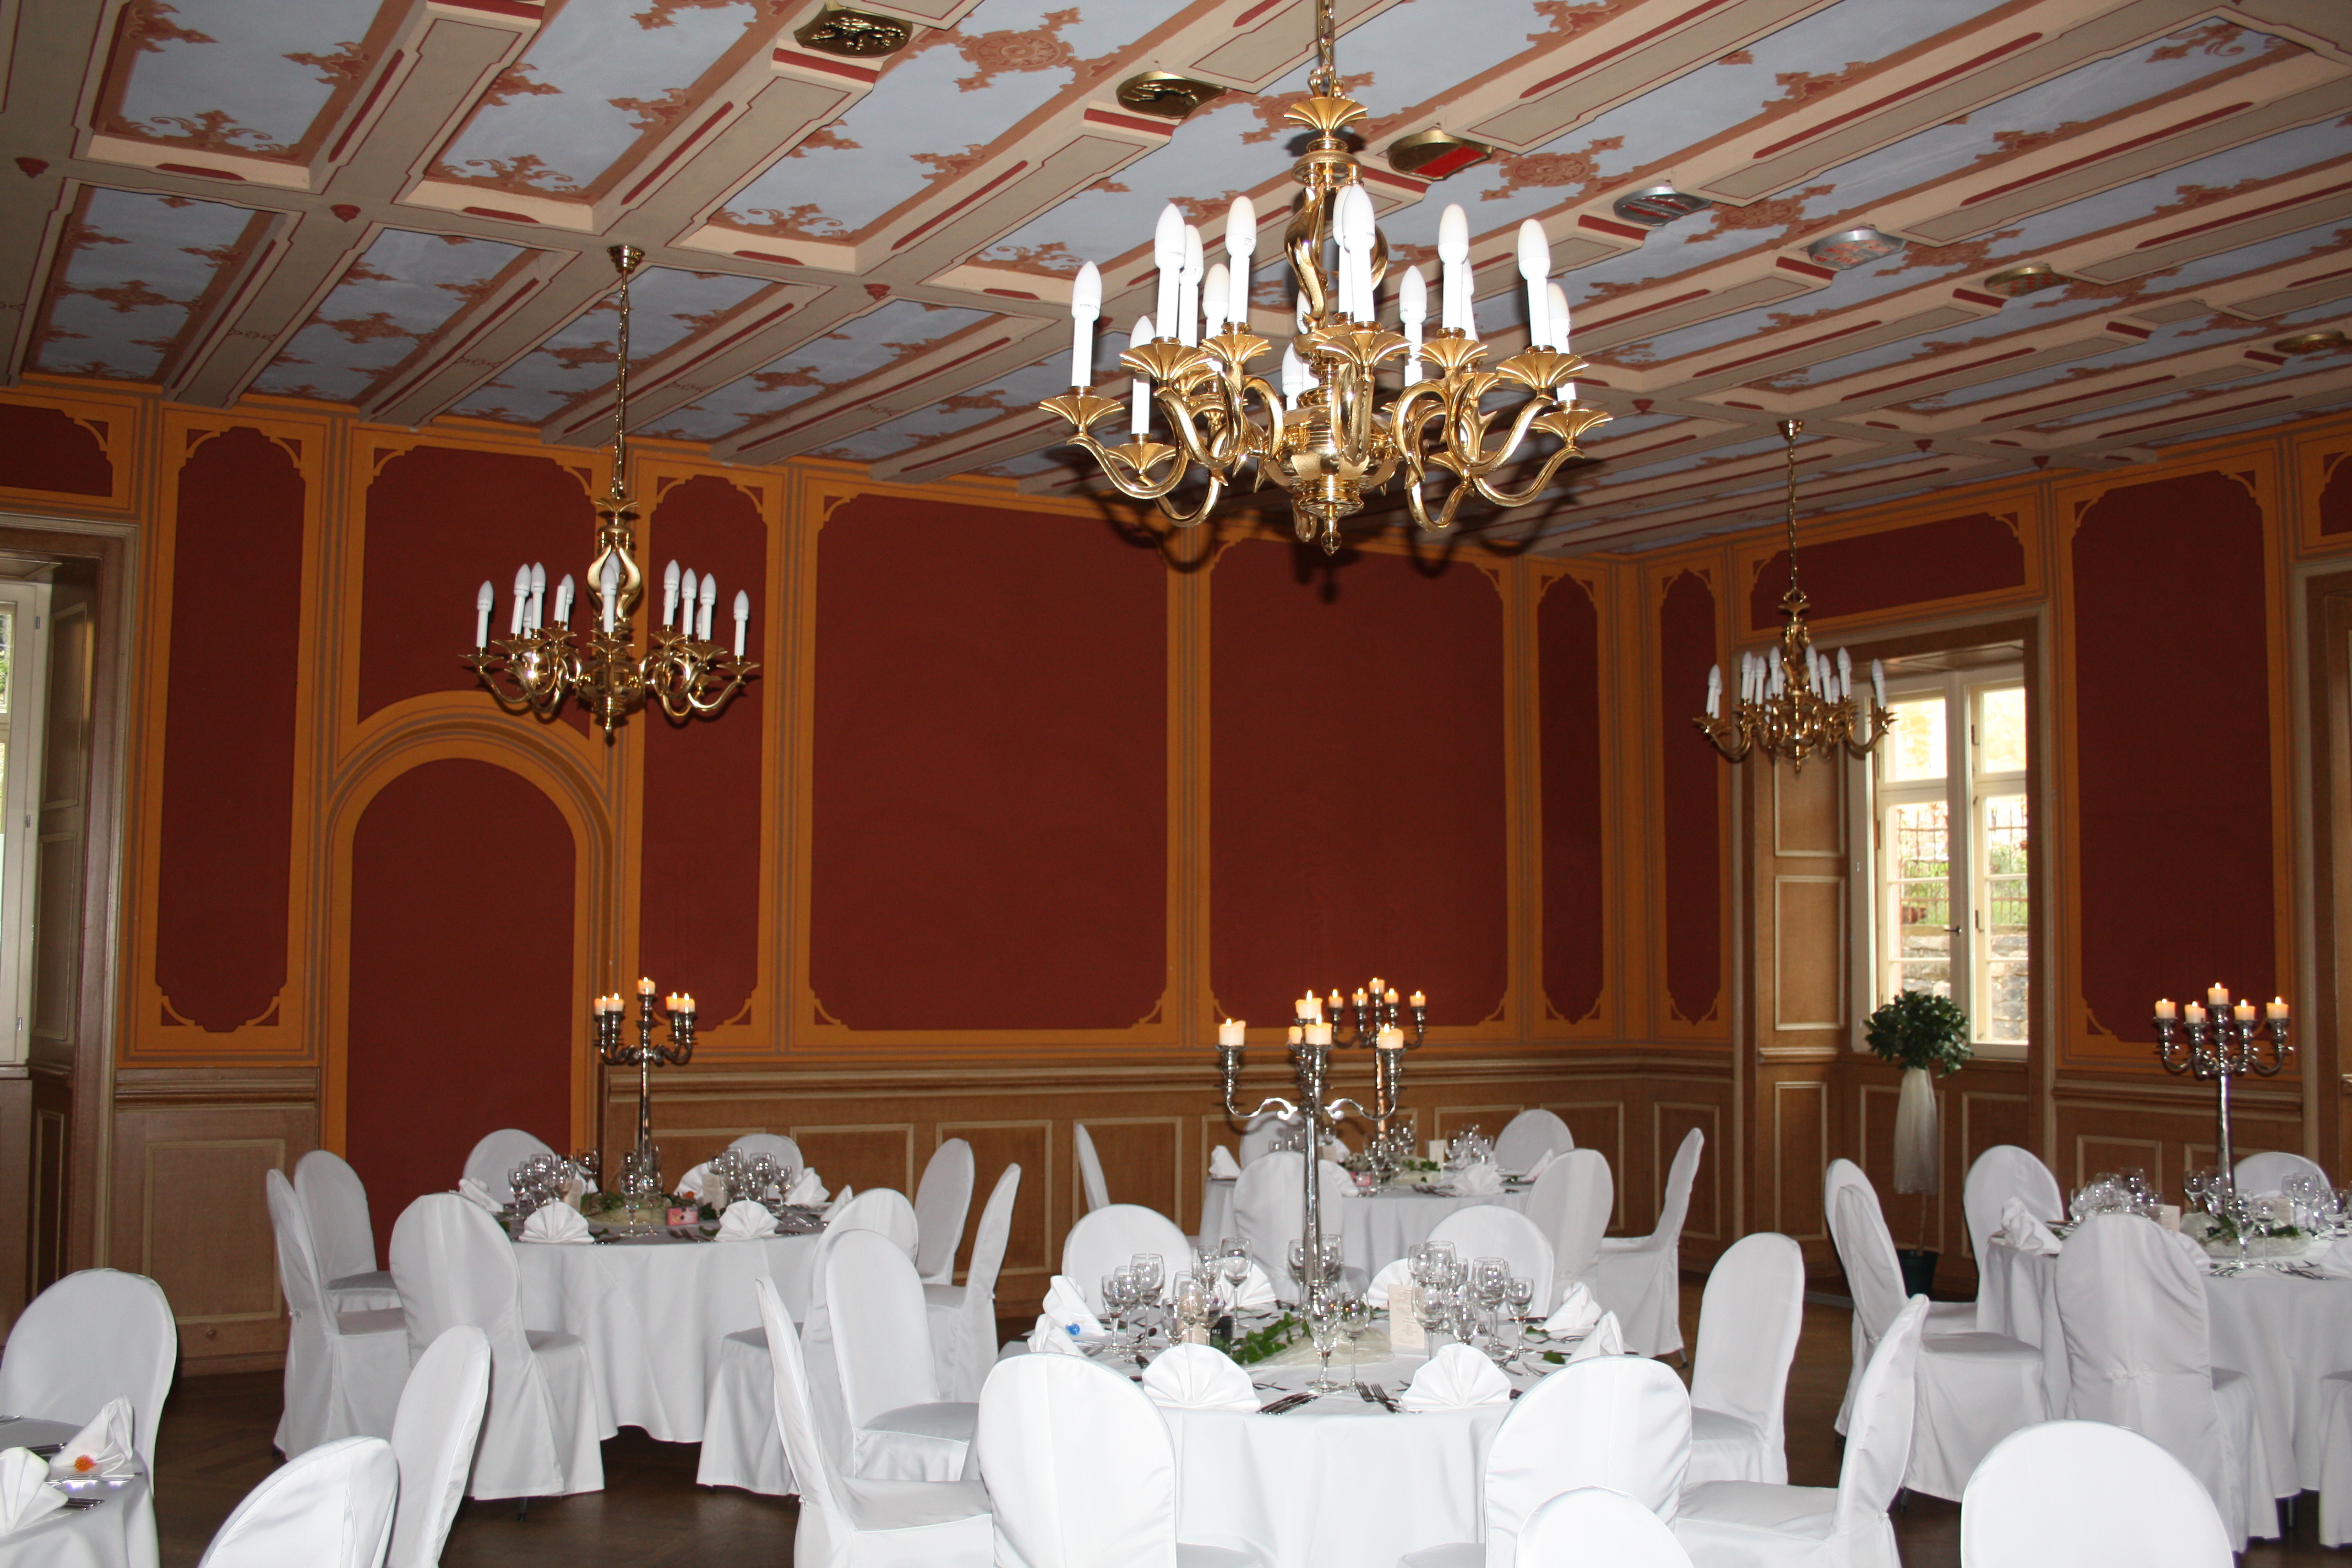 Der Wappensaal vom Schloss Gedern mit Hochzeitsdekoration.
